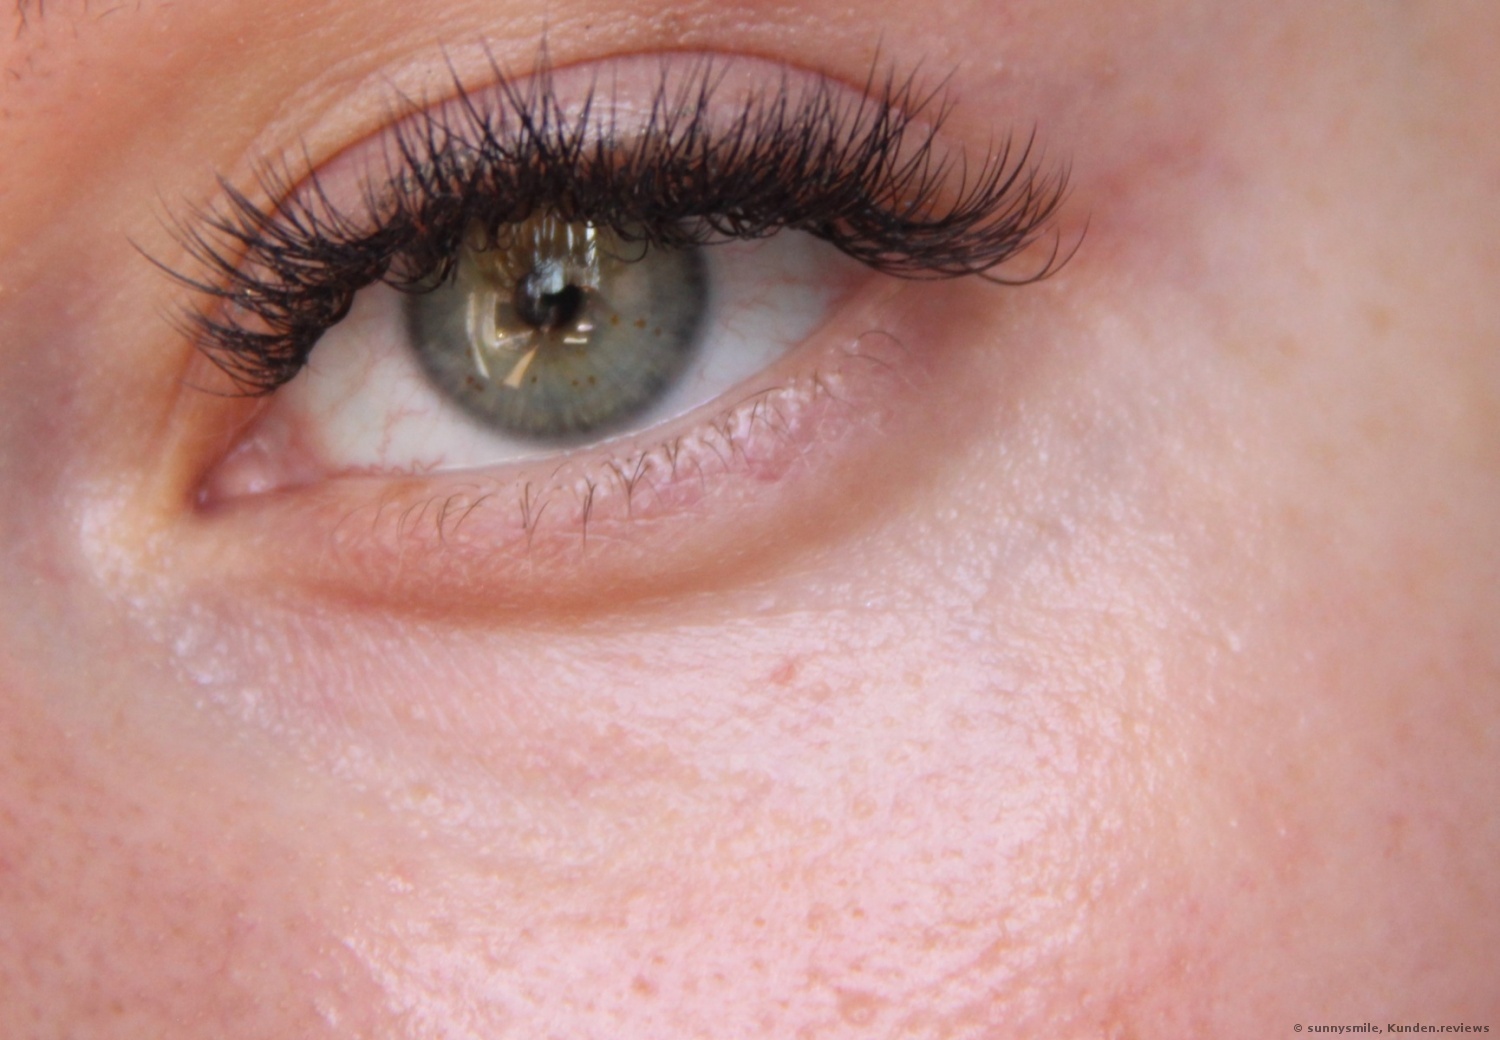 Dr. Jart+ Focuspot Wrinkle Melting Augenpatches Foto